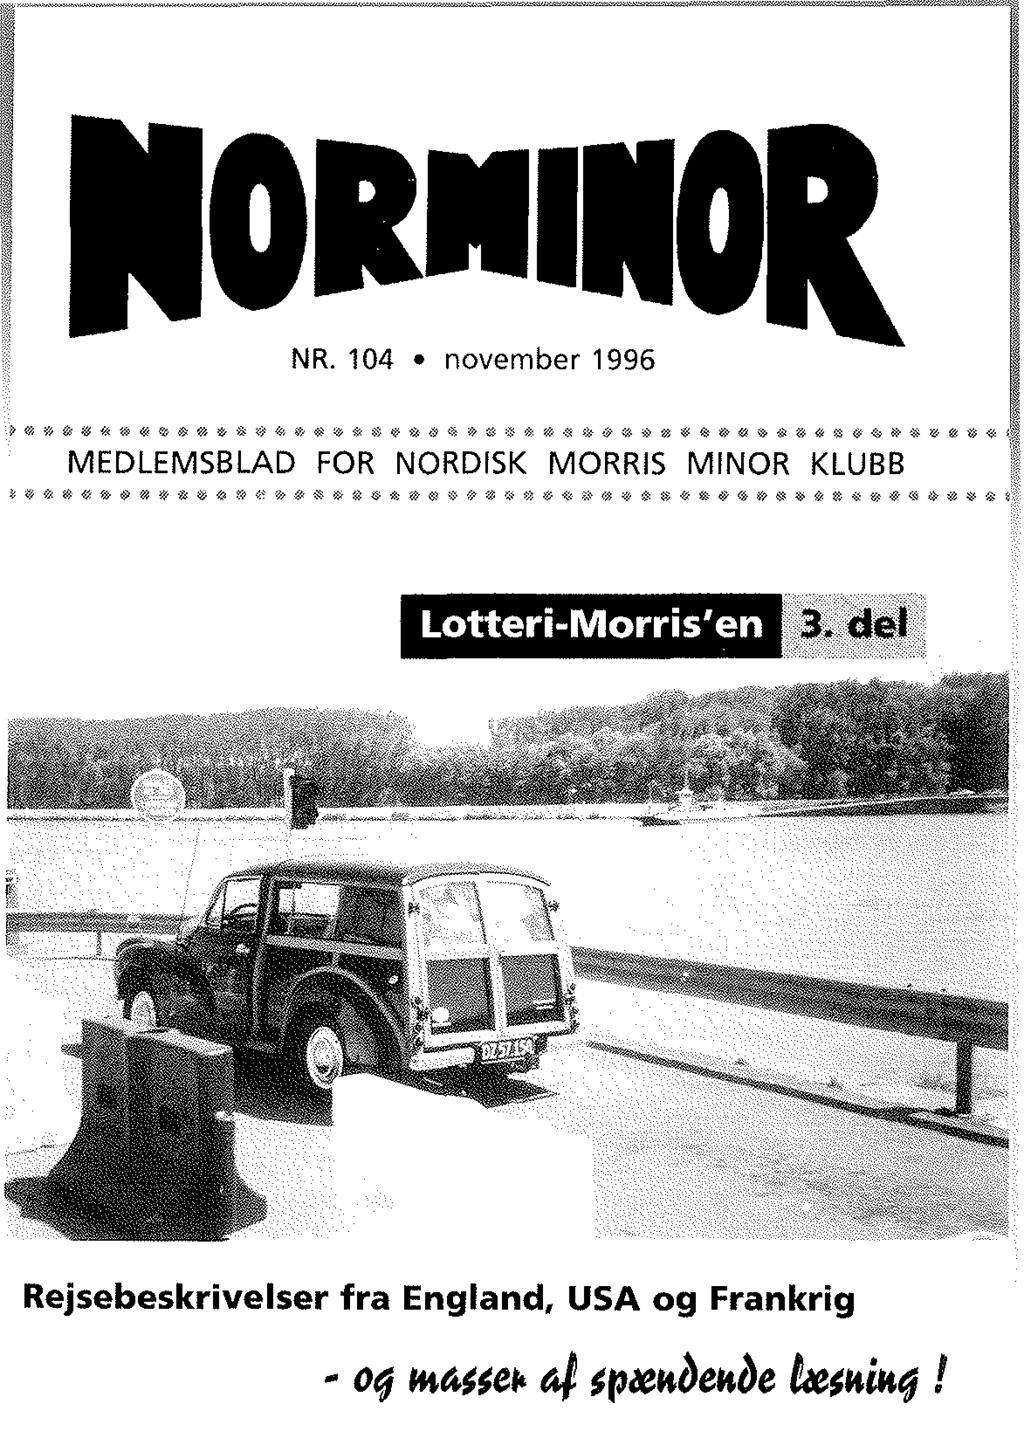 Nr 104 November 1996 Medlemsblad For Nordisk Morris Minor - 